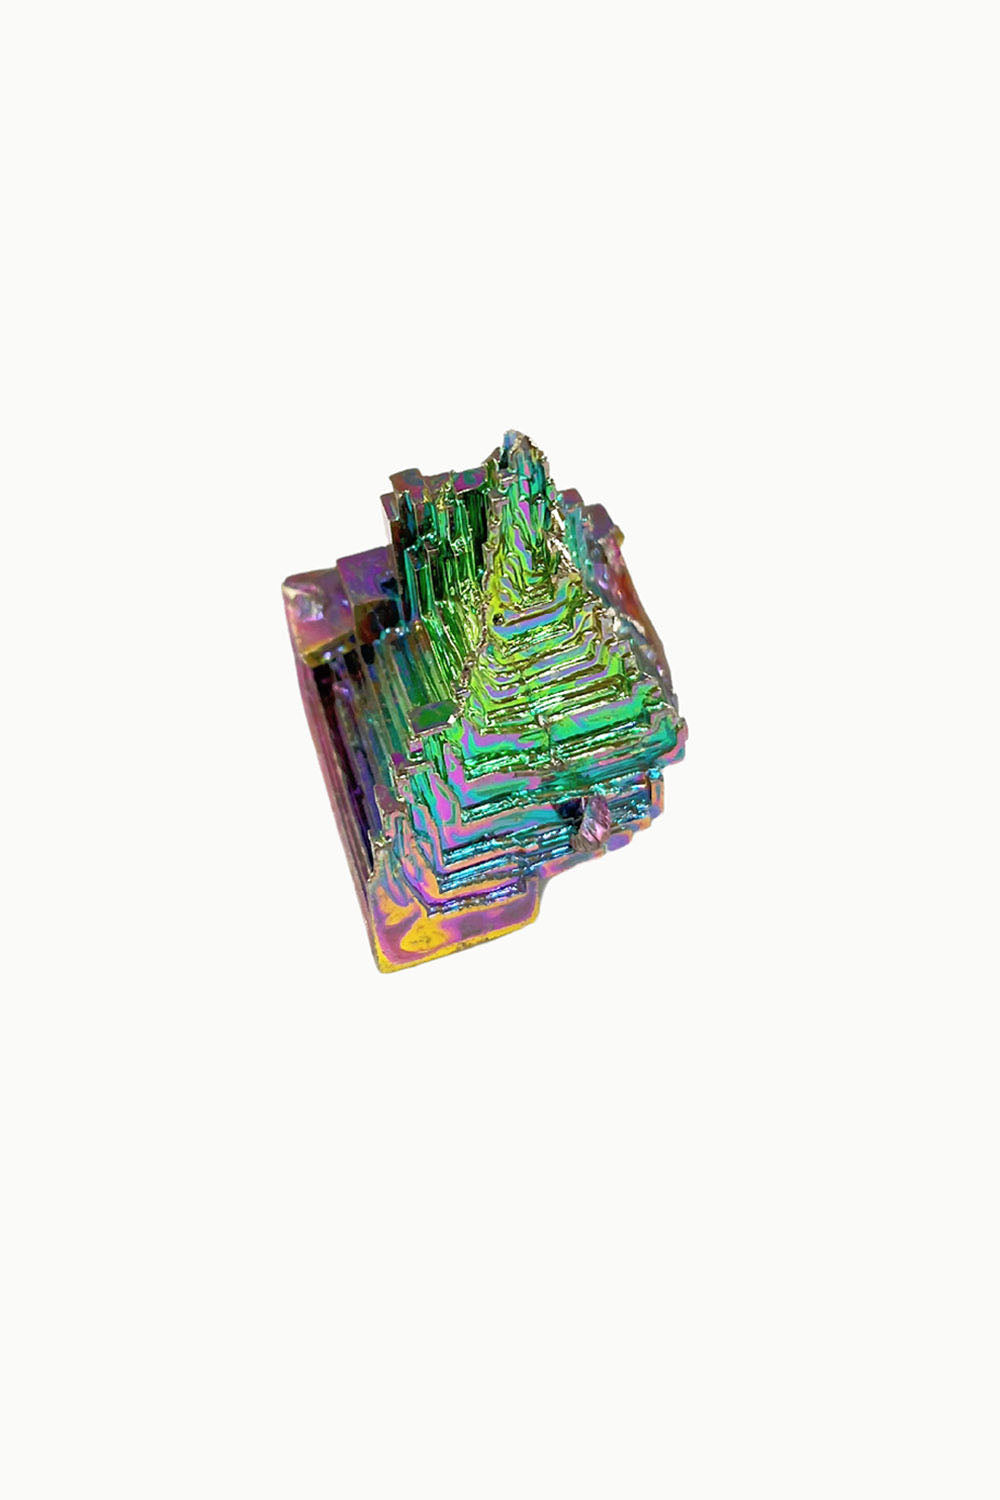 Rainbow Aura Bismuth Cluster #2